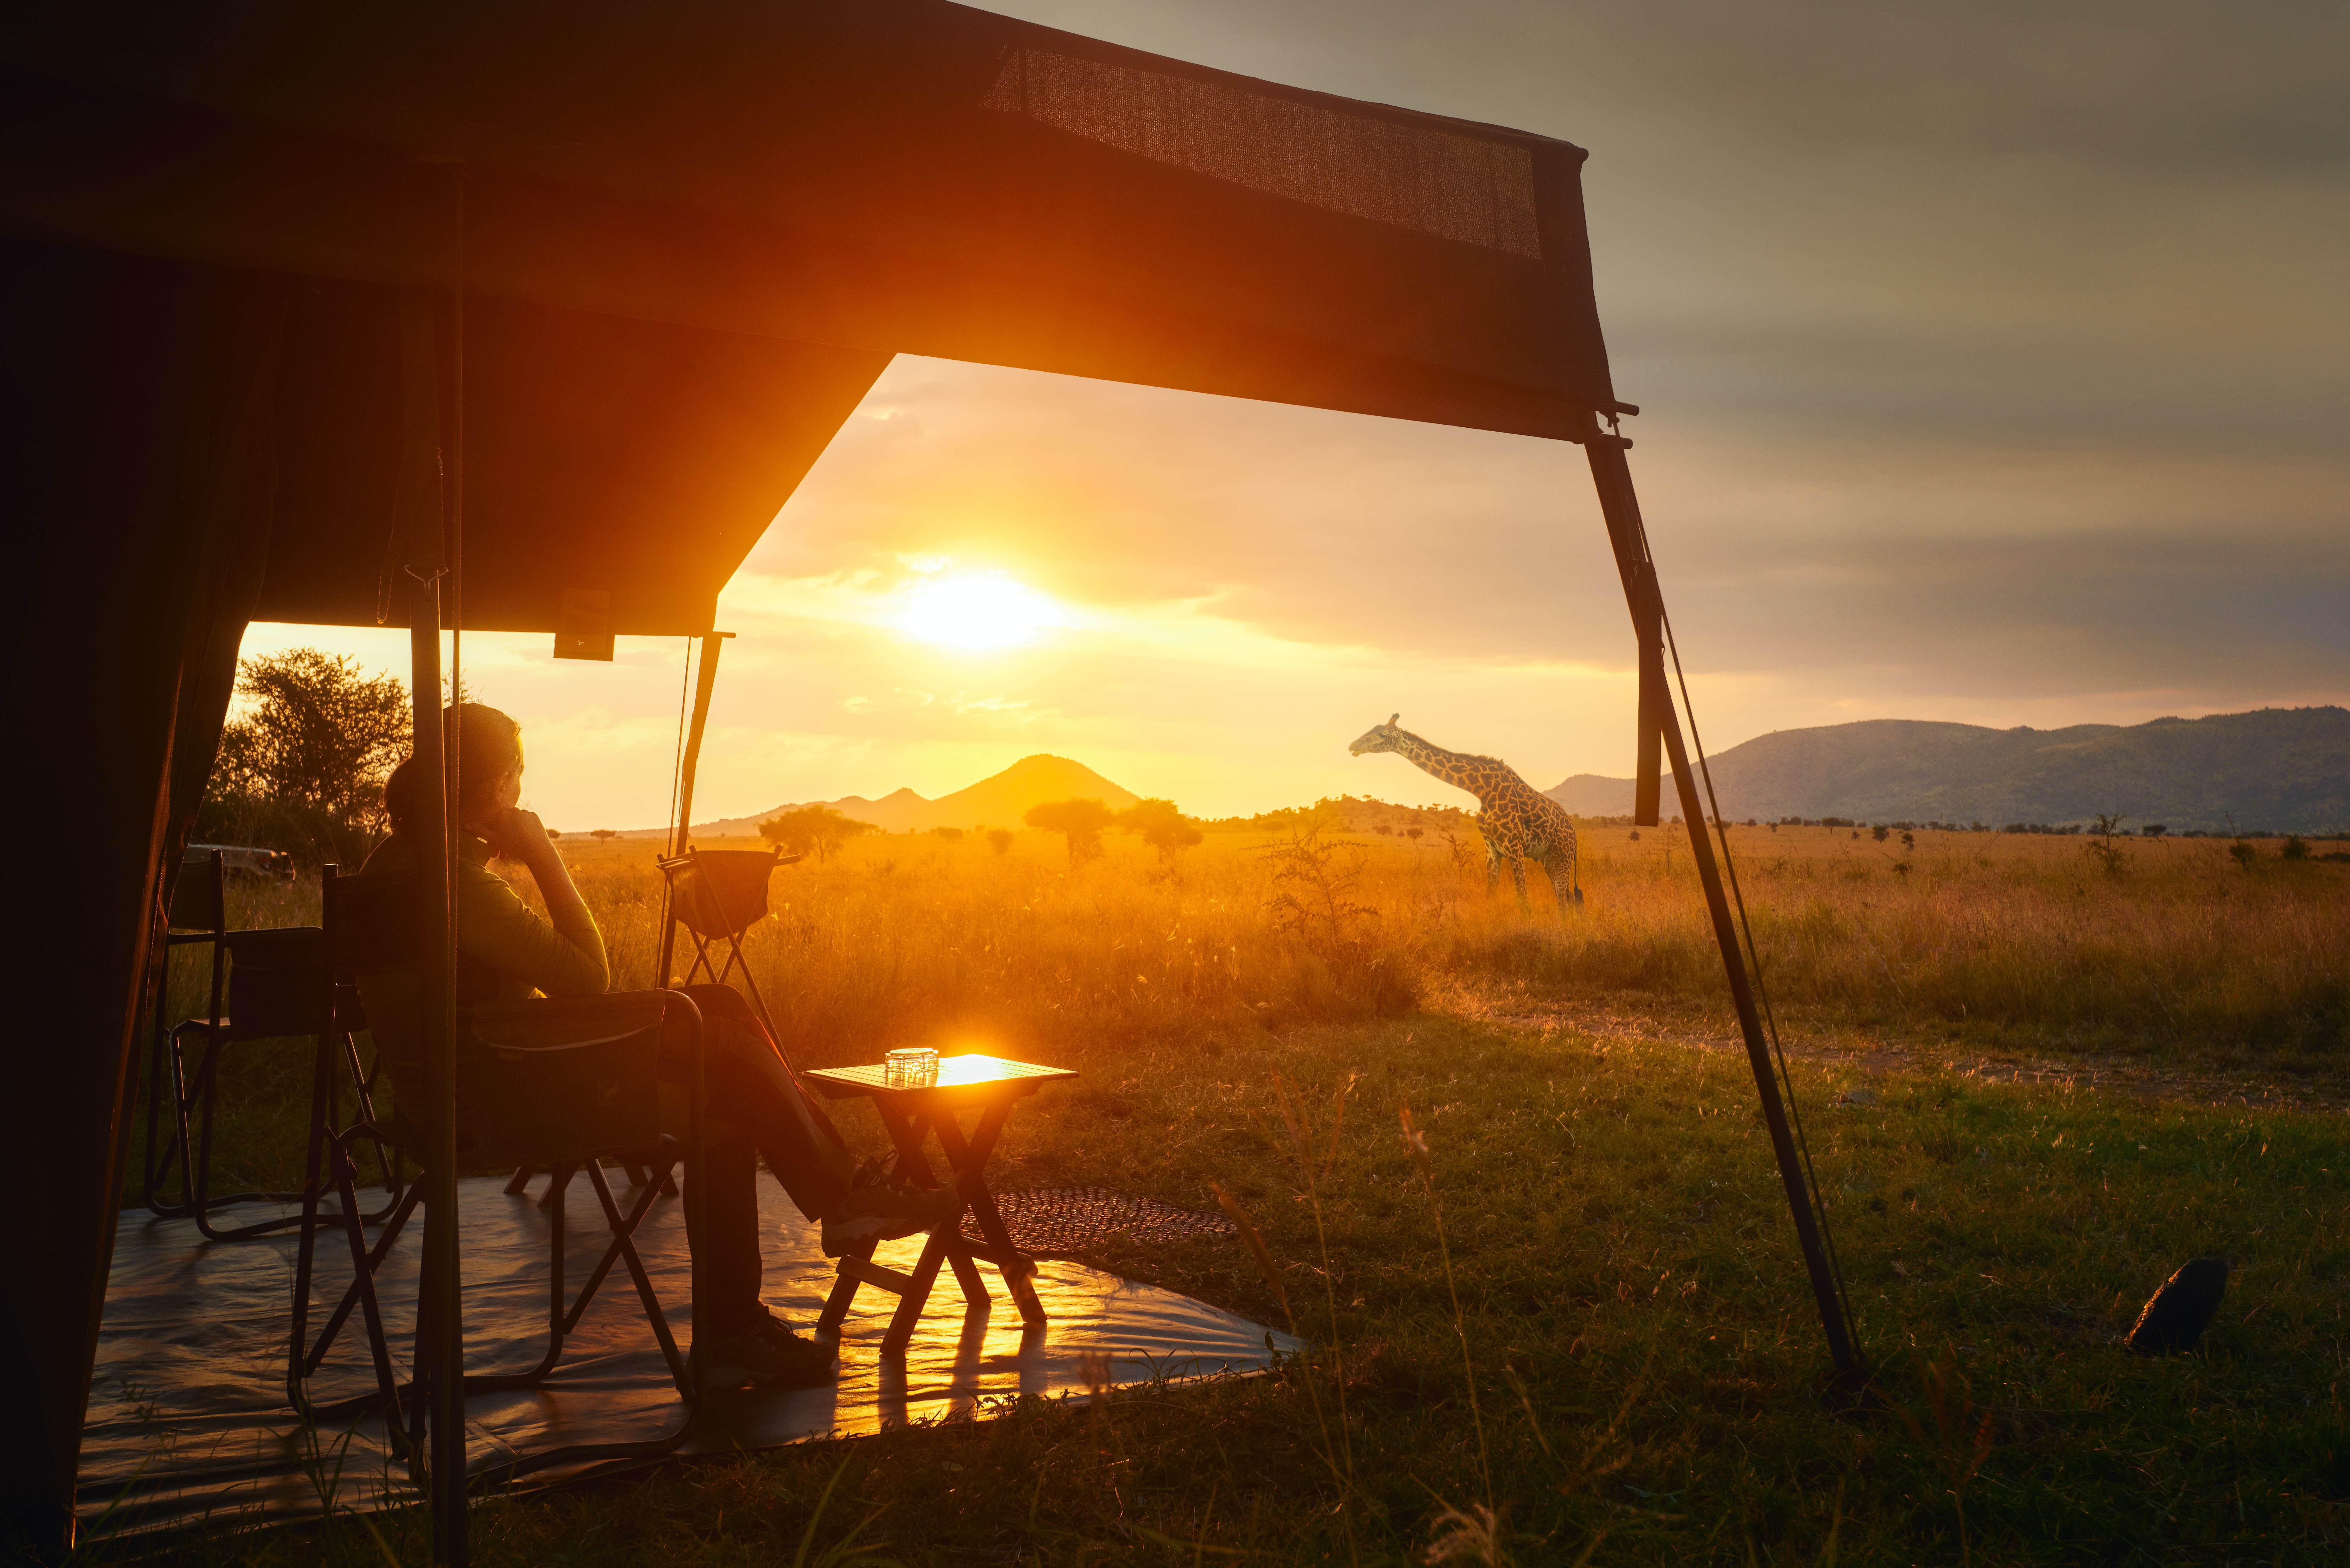 Eine Frau entspannt sich in einer Safari-Lodge mit einer Giraffe im Hintergrund | Quelle: Shutterstock